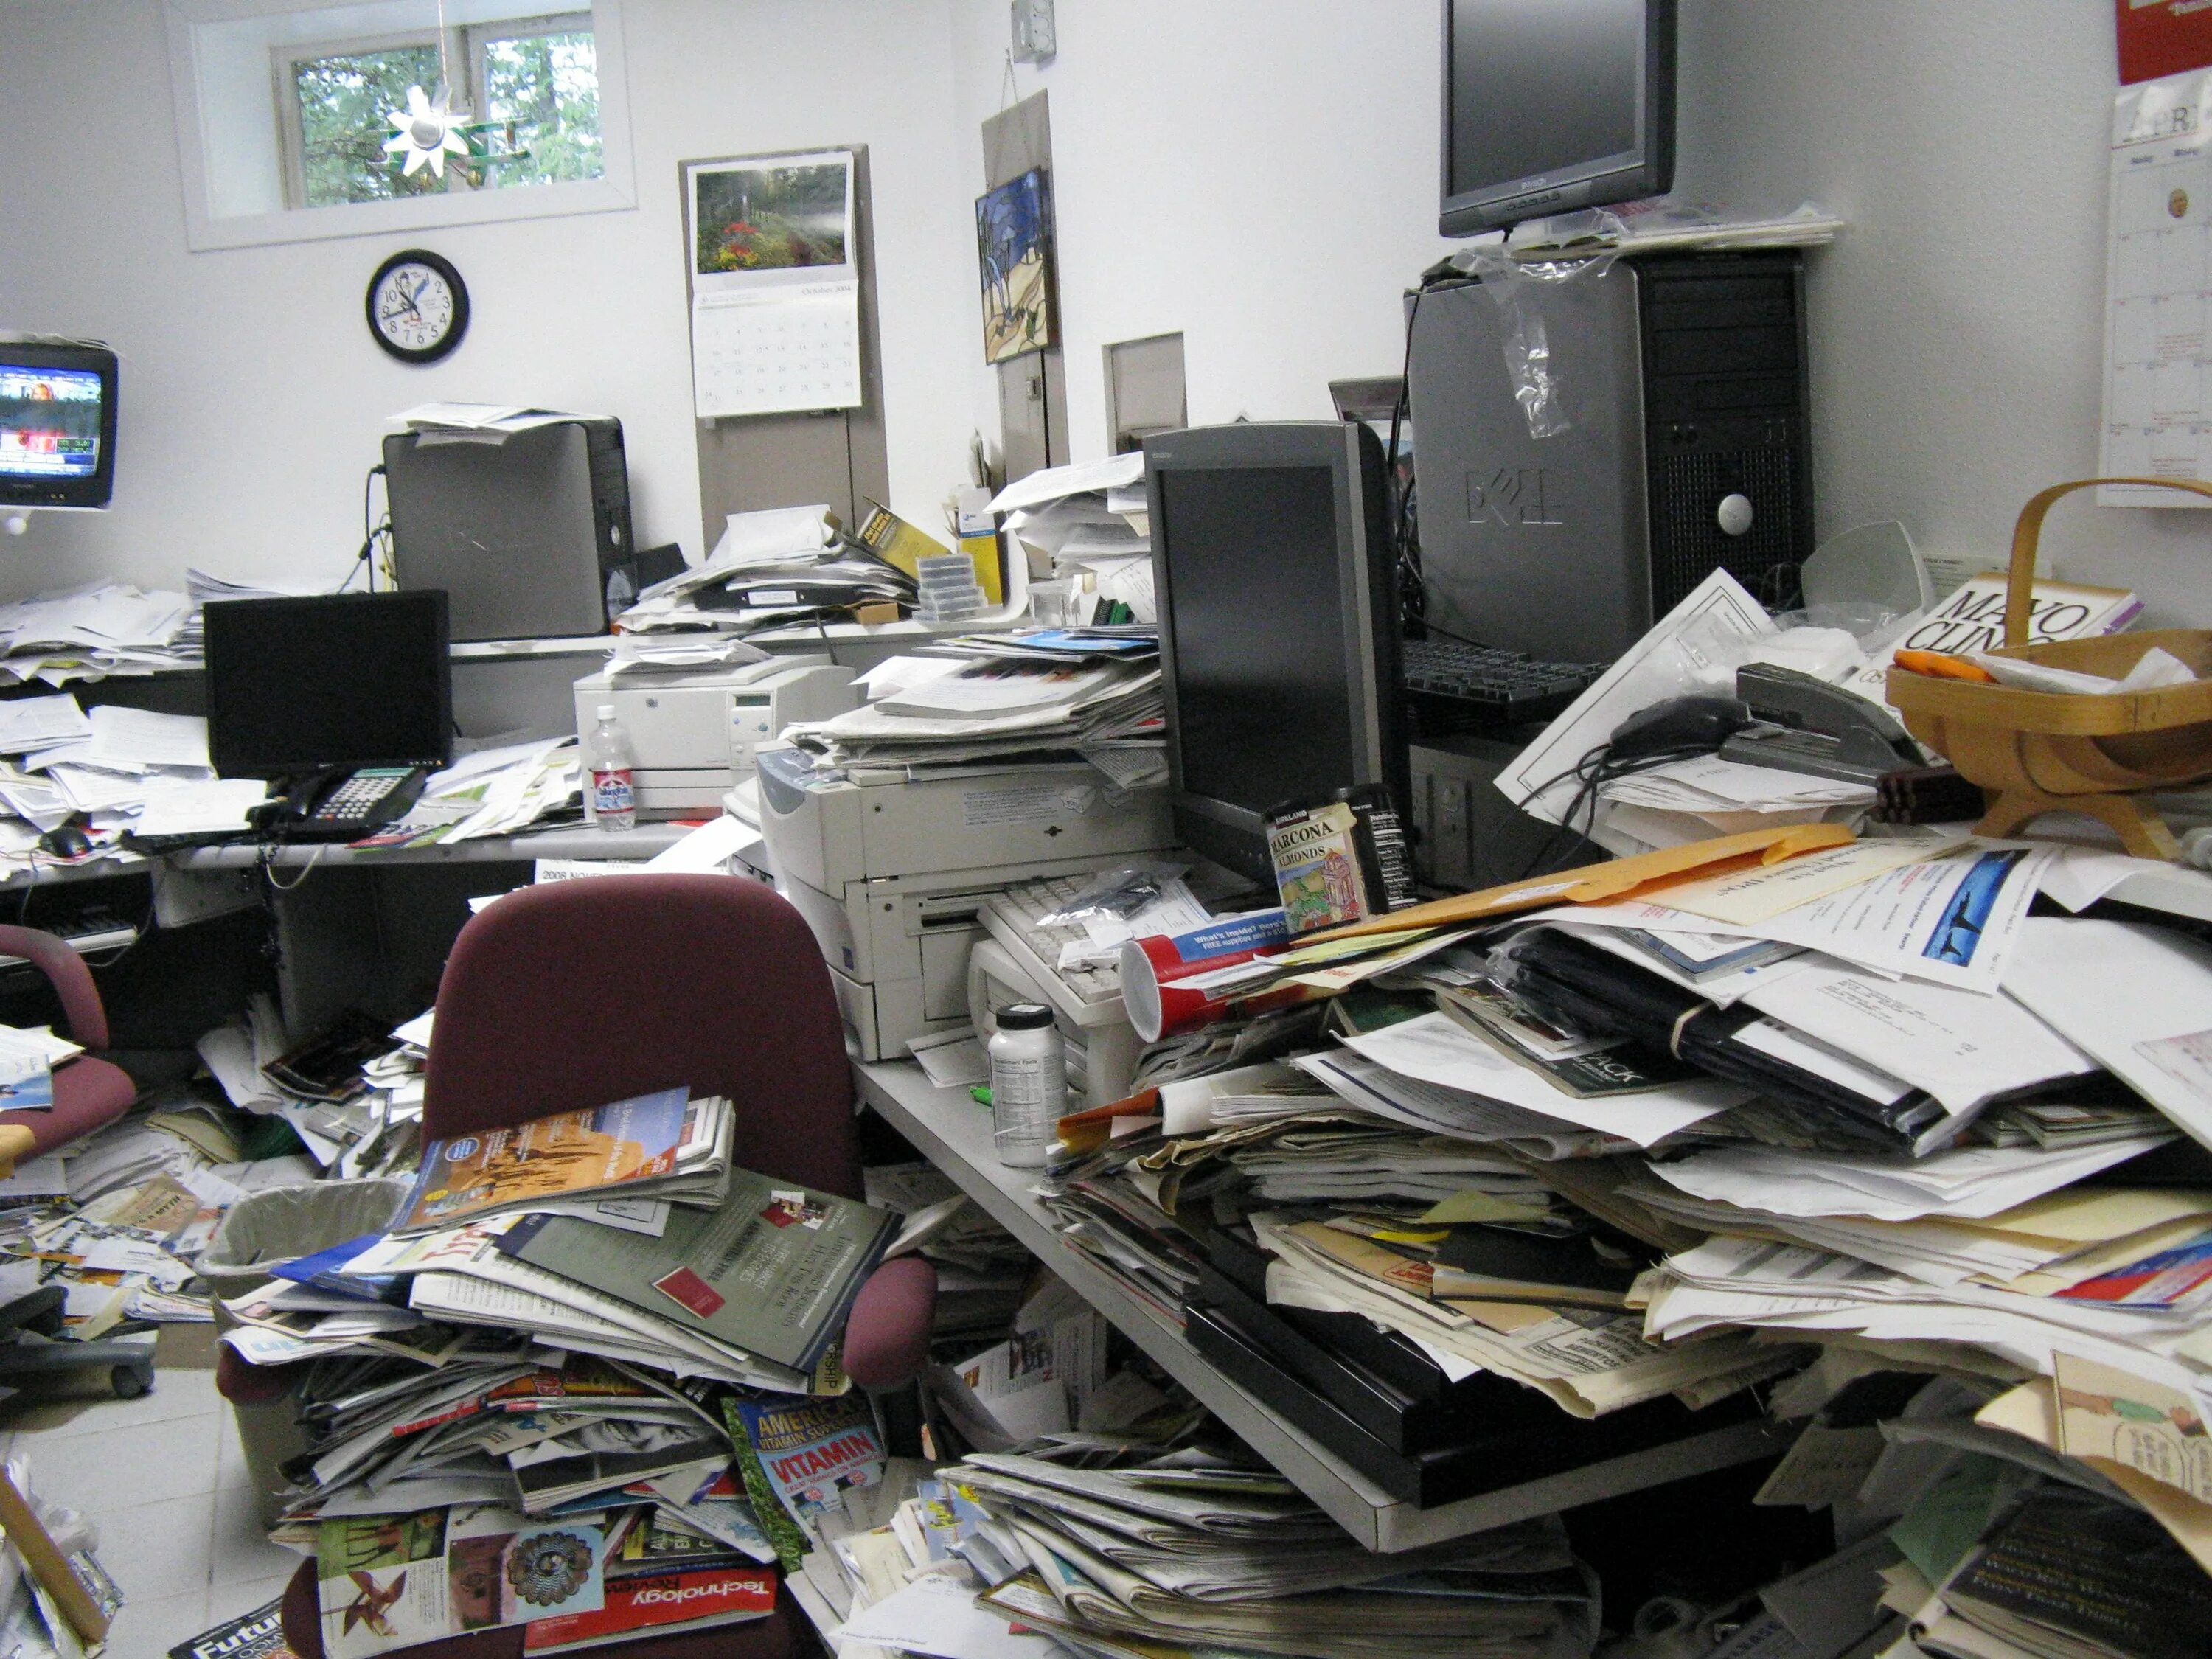 Беспорядок на рабочем месте. Бардак в кабинете. Стол заваленный бумагами. Письменный стол заваленный бумагами в офисе.